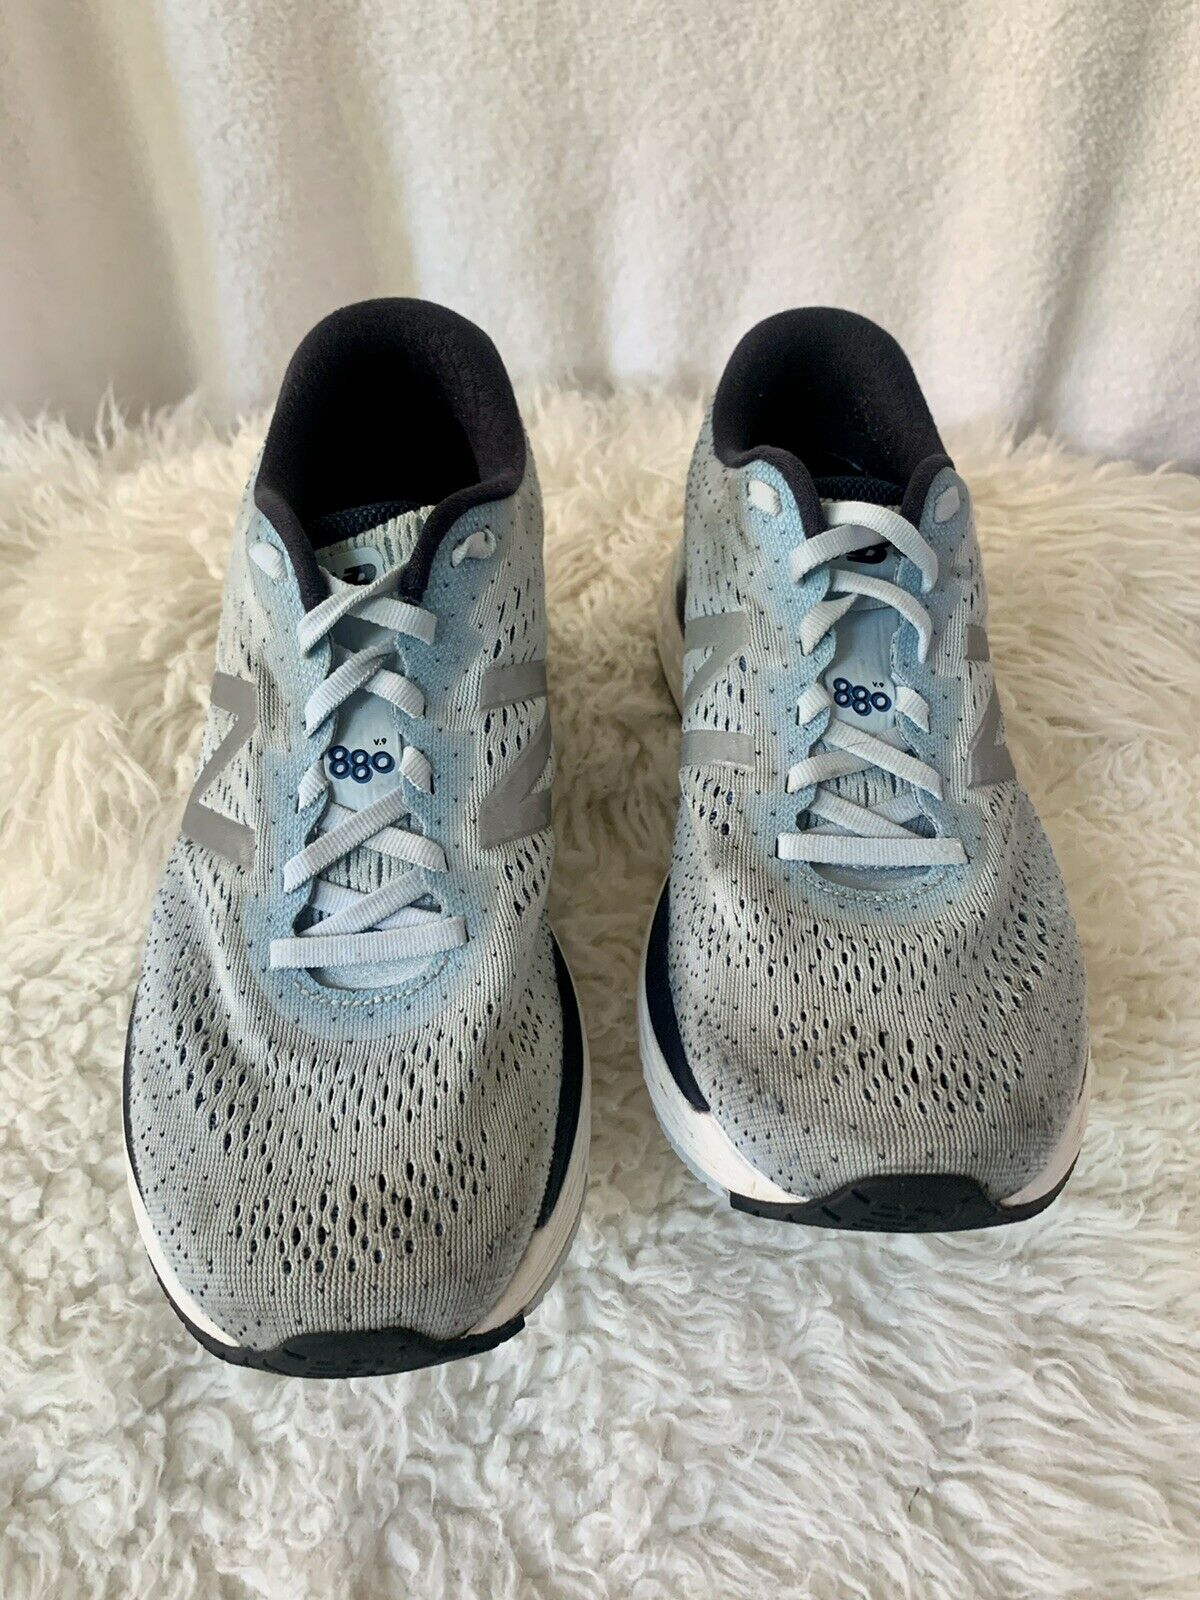 New Balance Athletic Shoes Women’s 10.5 Running Walking Stylish Shoes